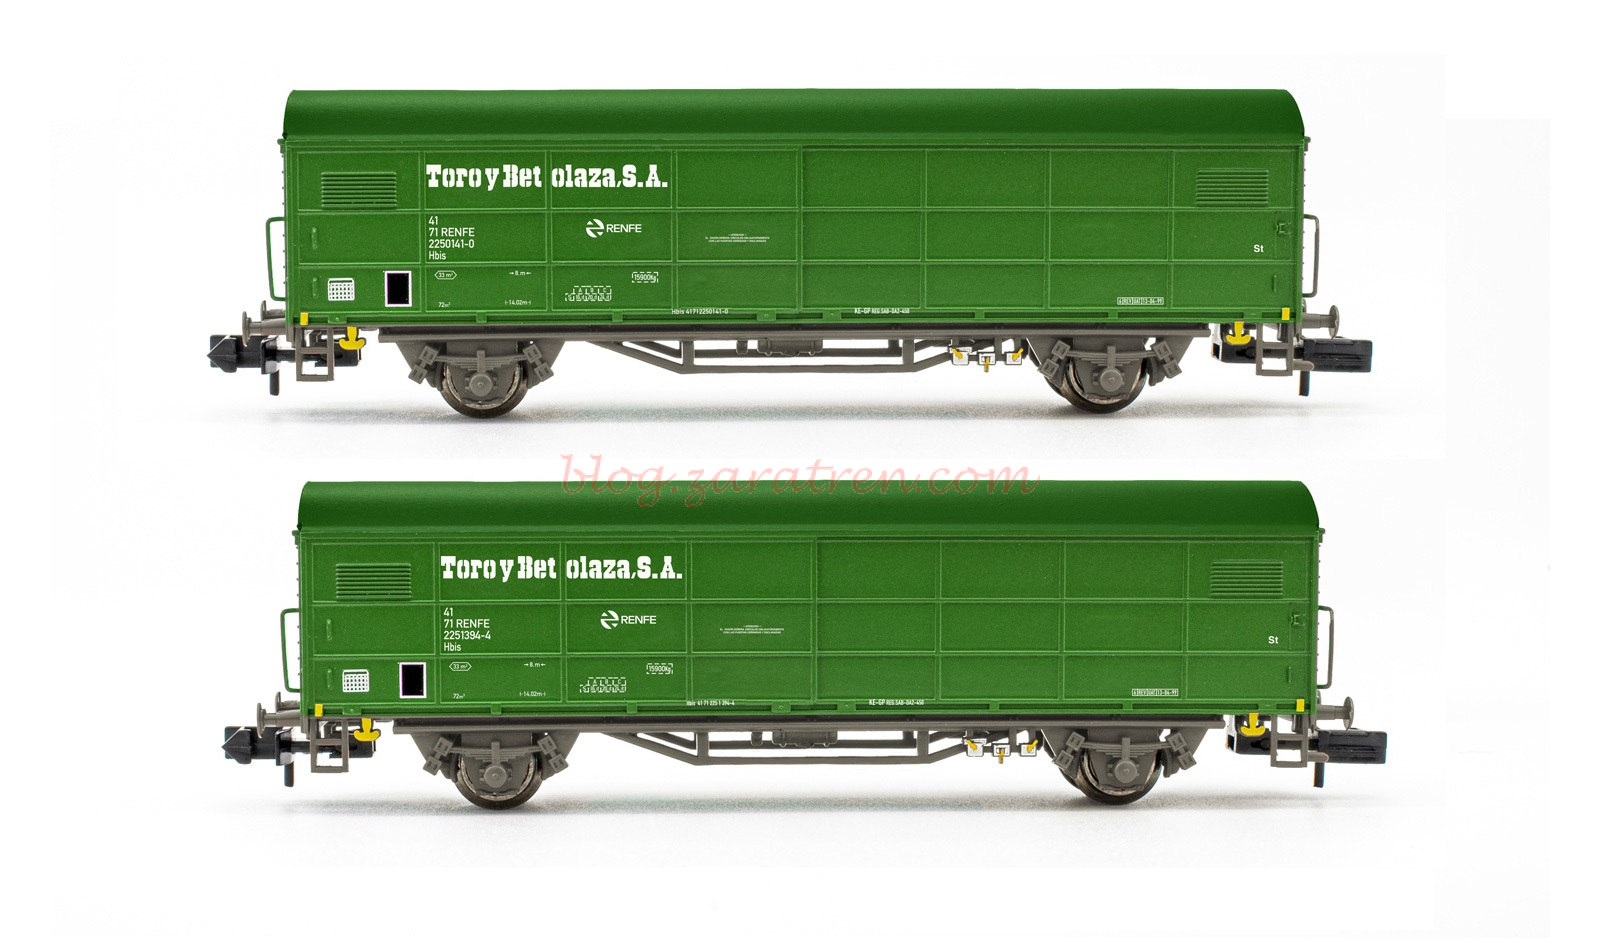 Arnold – Set de dos vagones cerrados JPD, RENFE, Toro y Betolaza S.A, Epoca V, Escala N, Ref: HN6580.